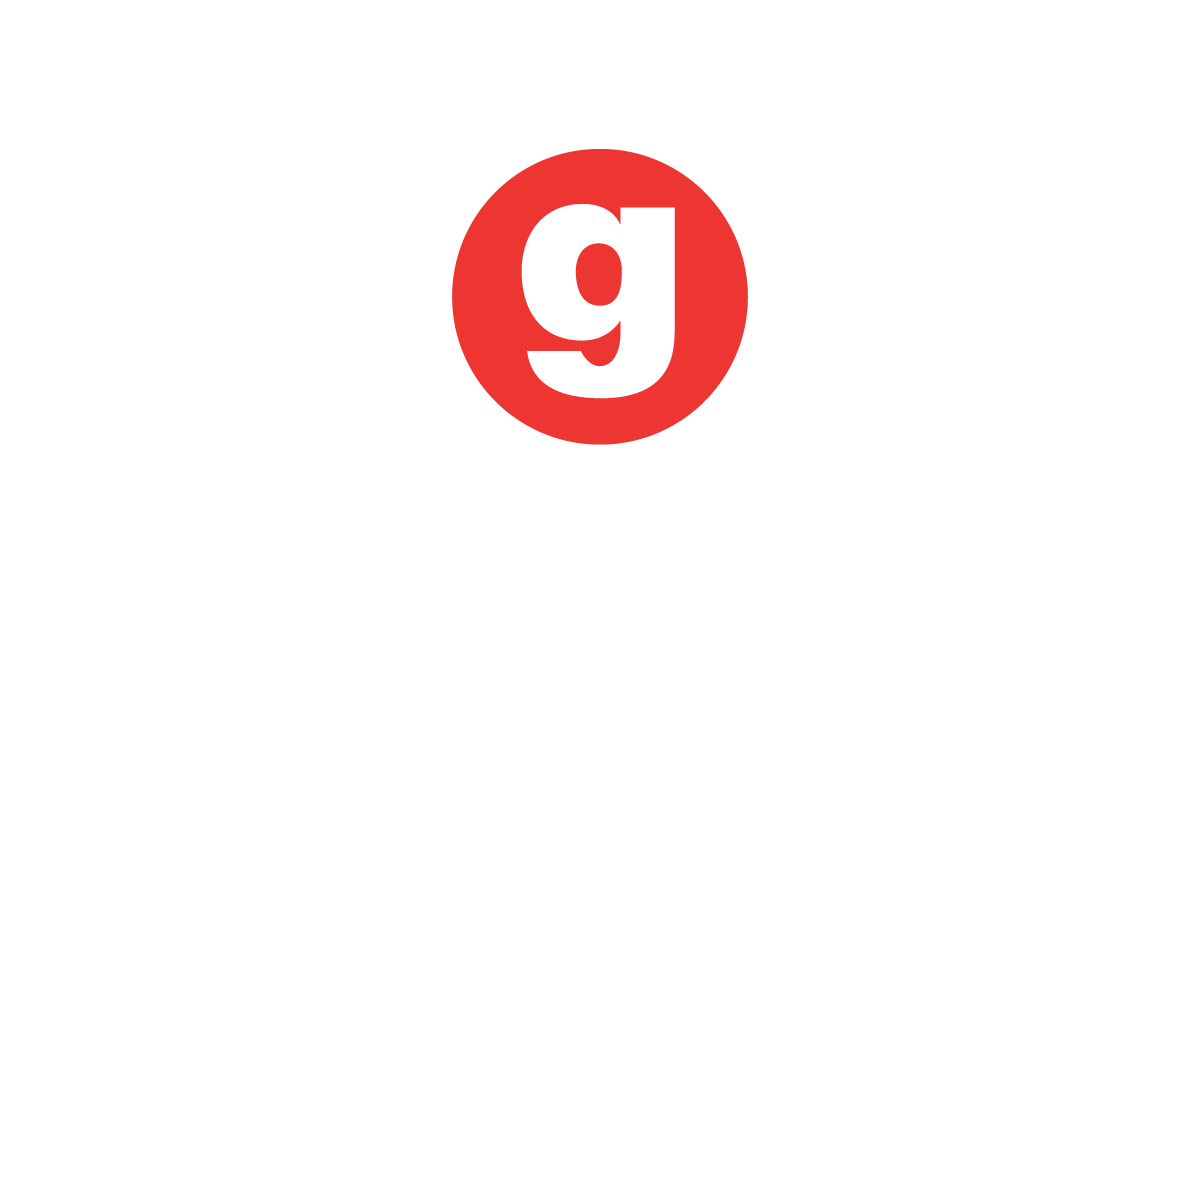 Fundación Génesis Empresarial